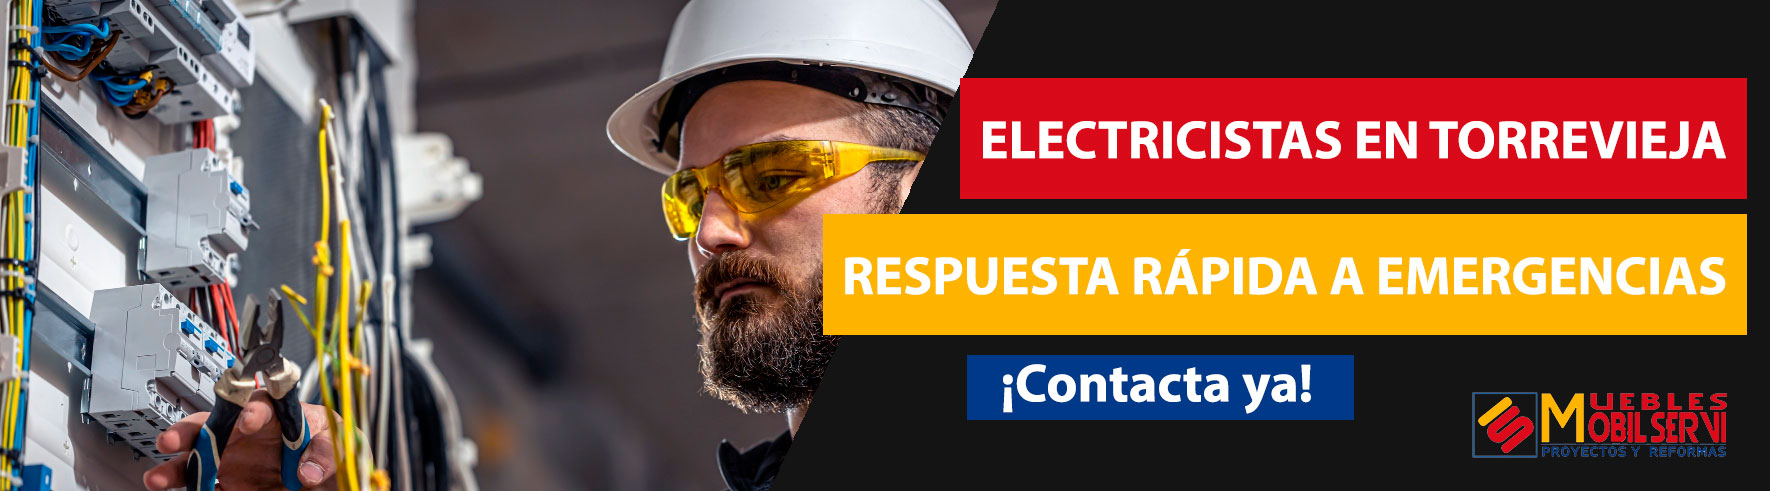 Electricistas Torrevieja. Trabajos de electricidad para todo tipo de reformas en Torrevieja, Alicante. Más de 25 años de experiencia.